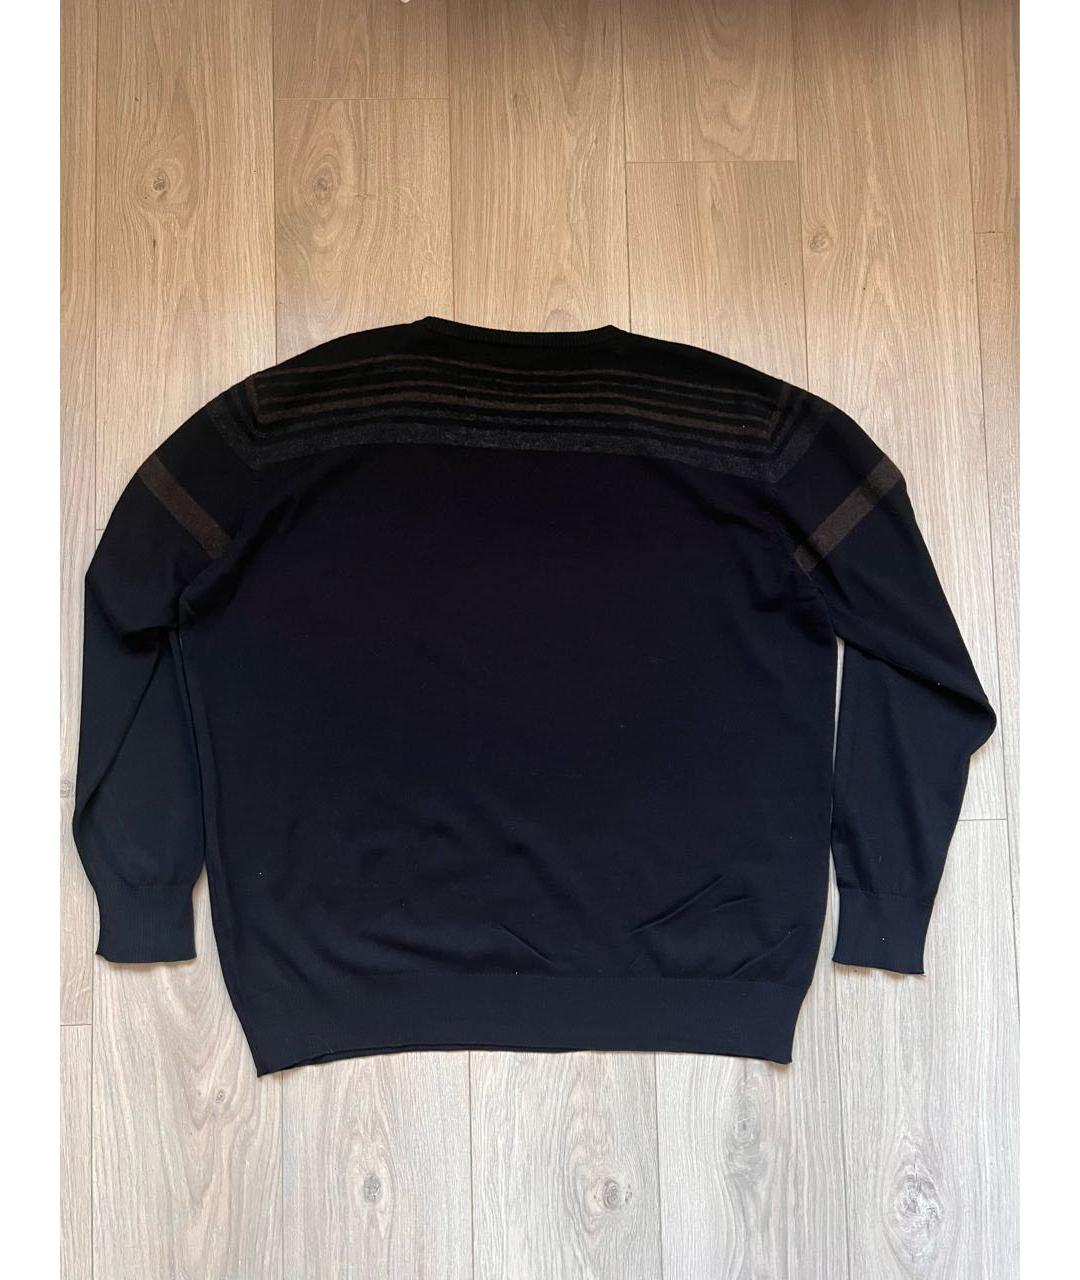 CORTIGIANI Черный шерстяной джемпер / свитер, фото 2